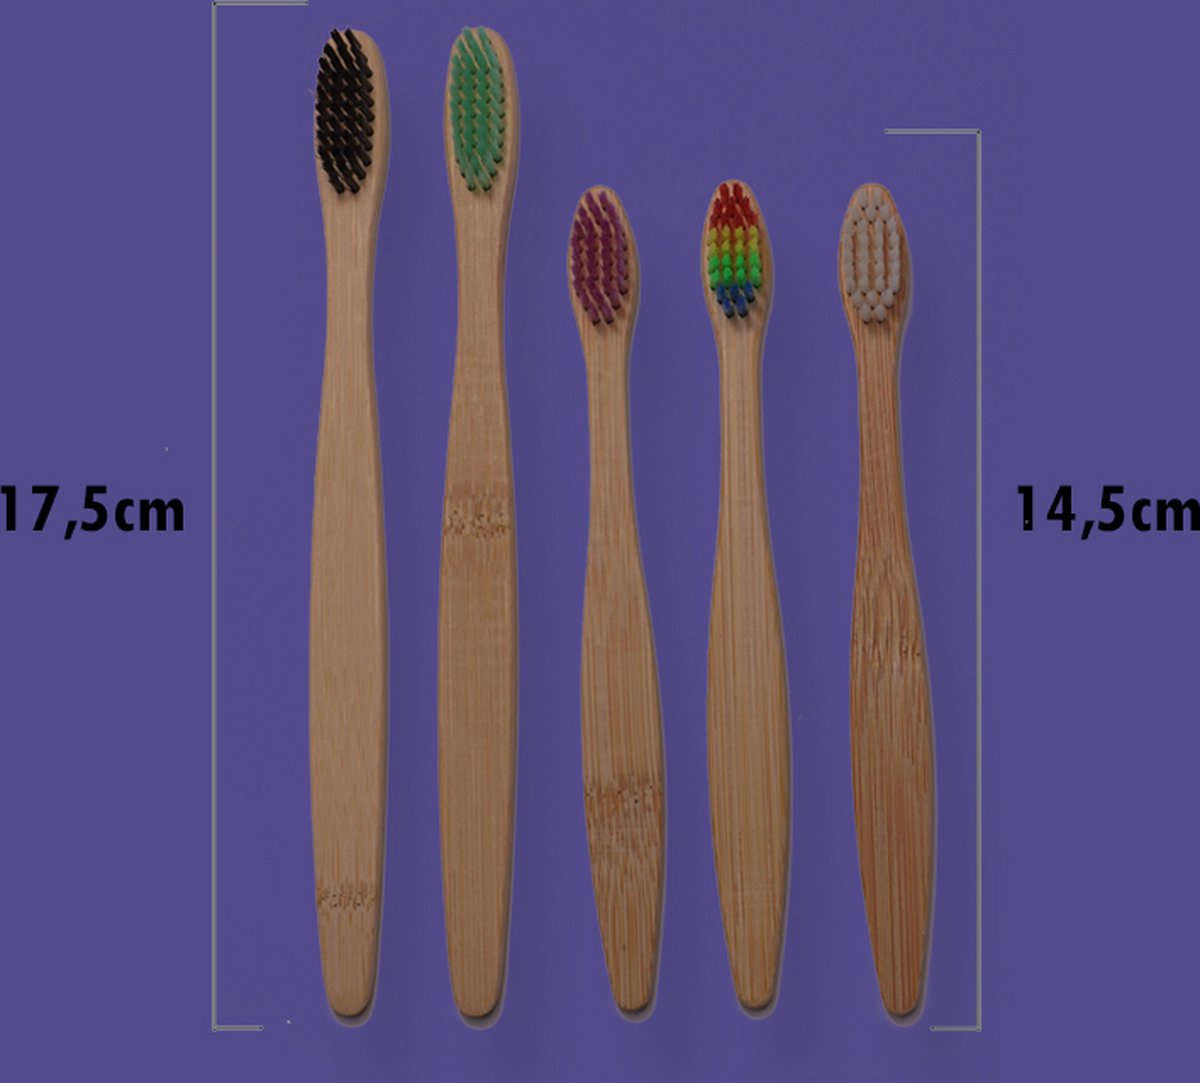 Bamboe tandenborstels Familie set (5st) - Gratis verzending - Tandenborsel - Bamboo - Duurzaam en milieuvriendelijk - Perfect voor dagelijks gebruik - Eco-vriendelijk - kindertandenborstel - Bamboo tandenborstel